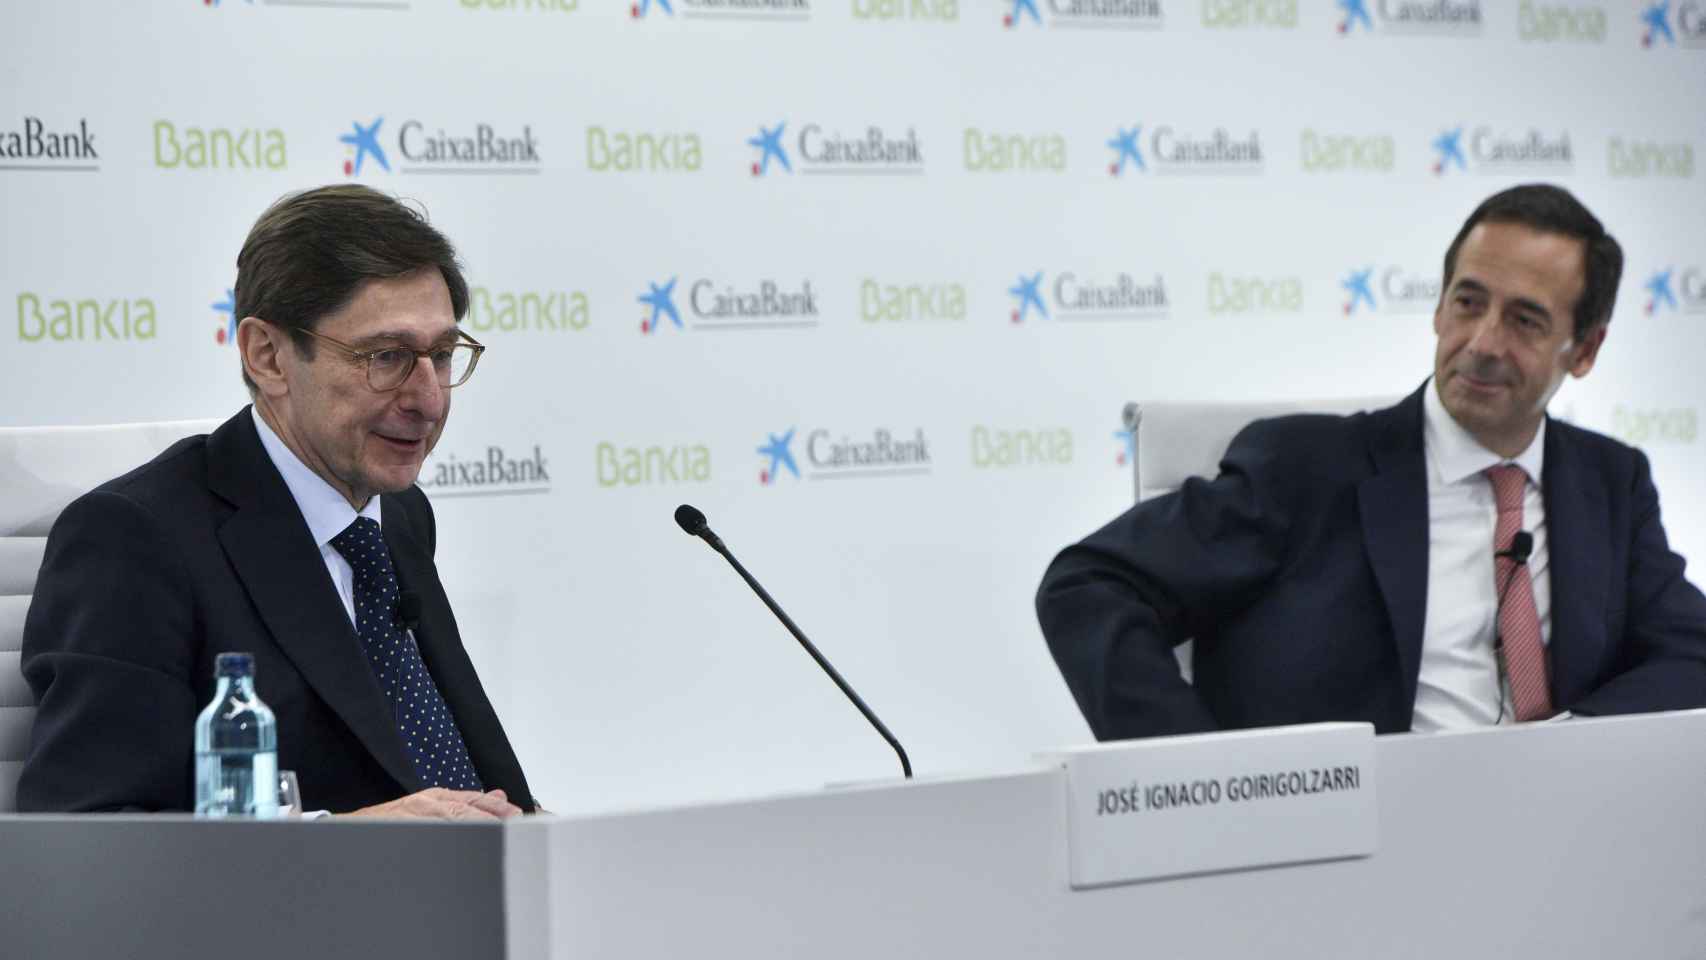 José Ignacio Goirigolzarri y Gonzalo Gortázar en la presentación del proyecto de fusión de Bankia y CaixaBank.